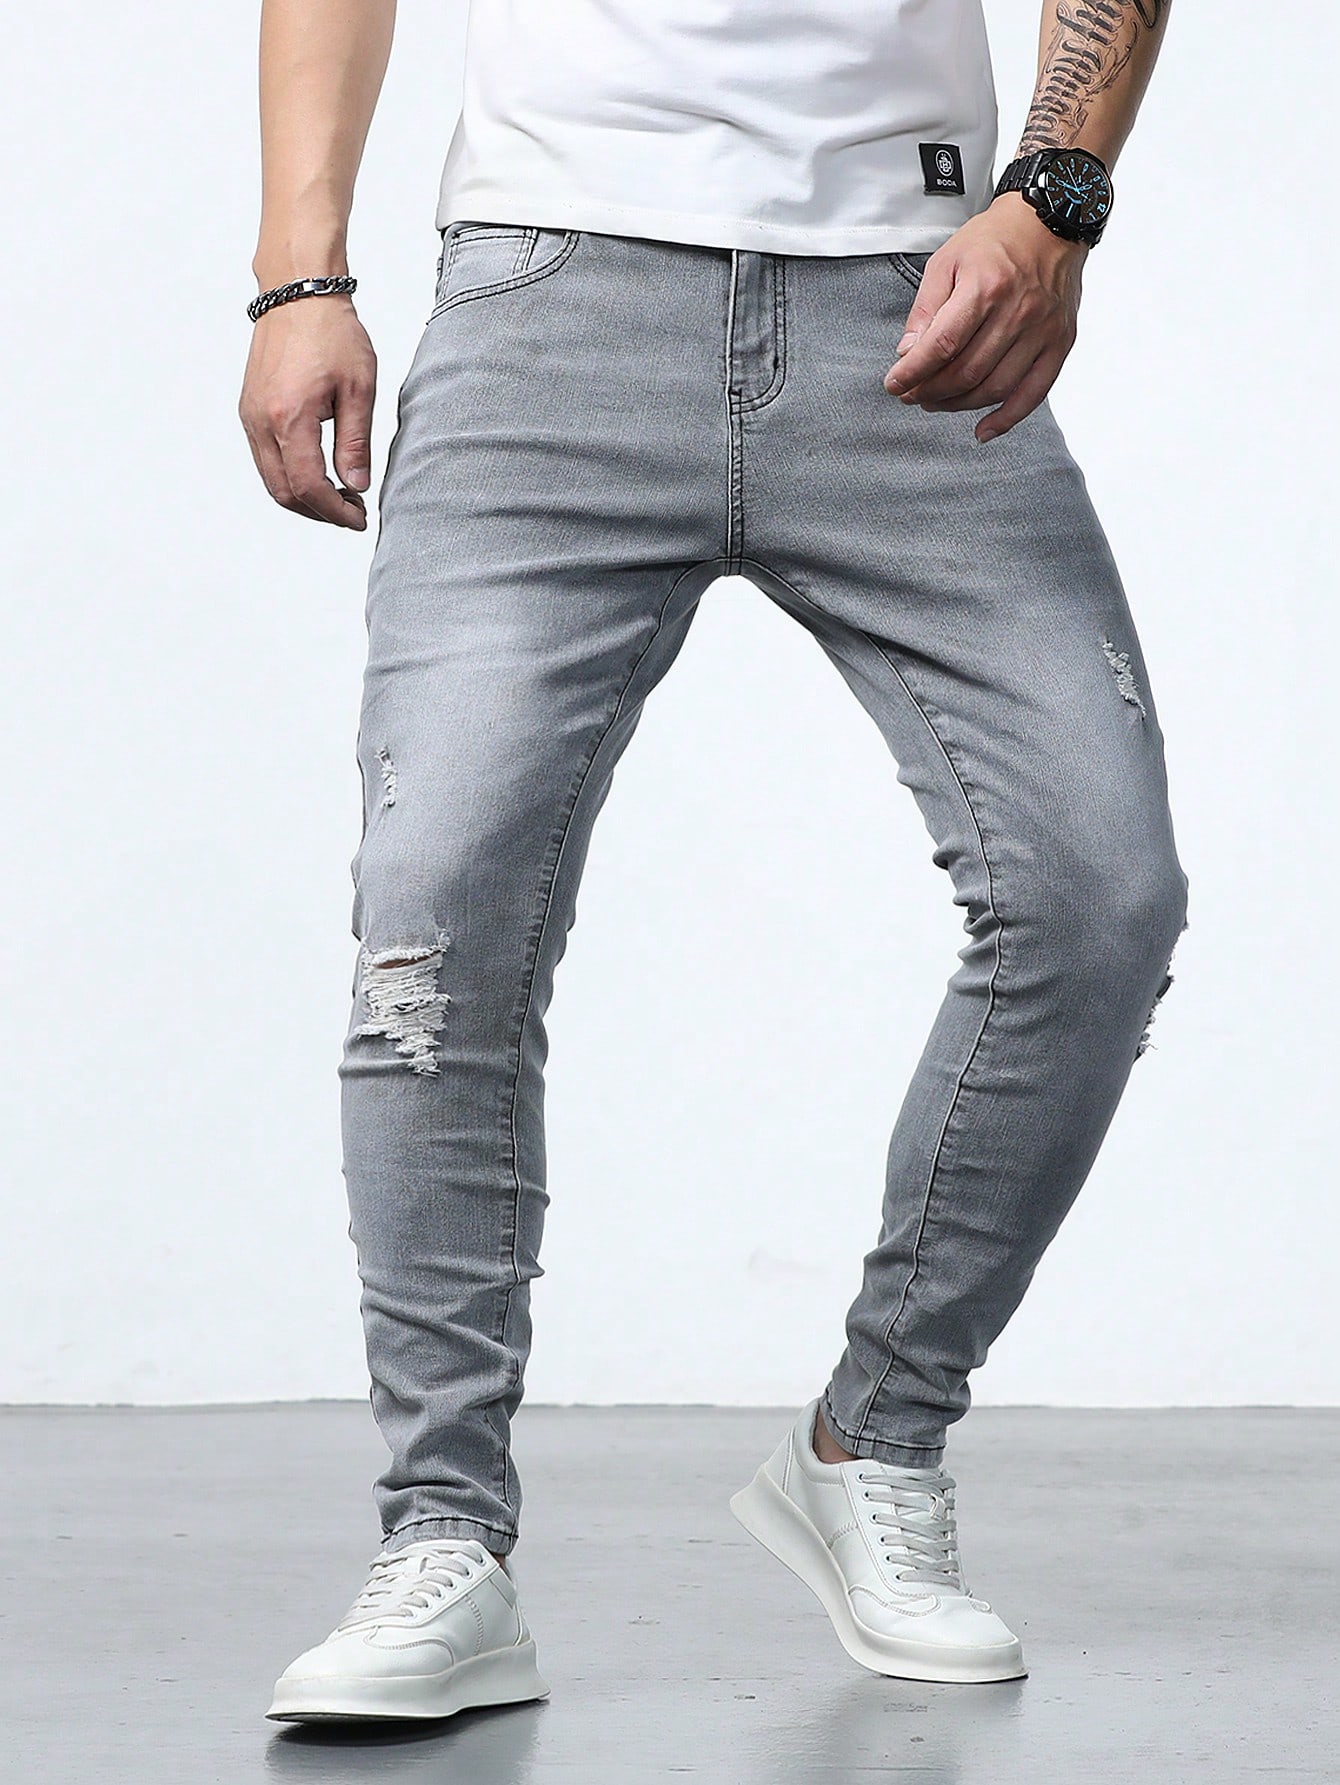 Мужские джинсы скинни с потертостями Manfinity Homme, серый джинсы albatros с потертостями 46 размер